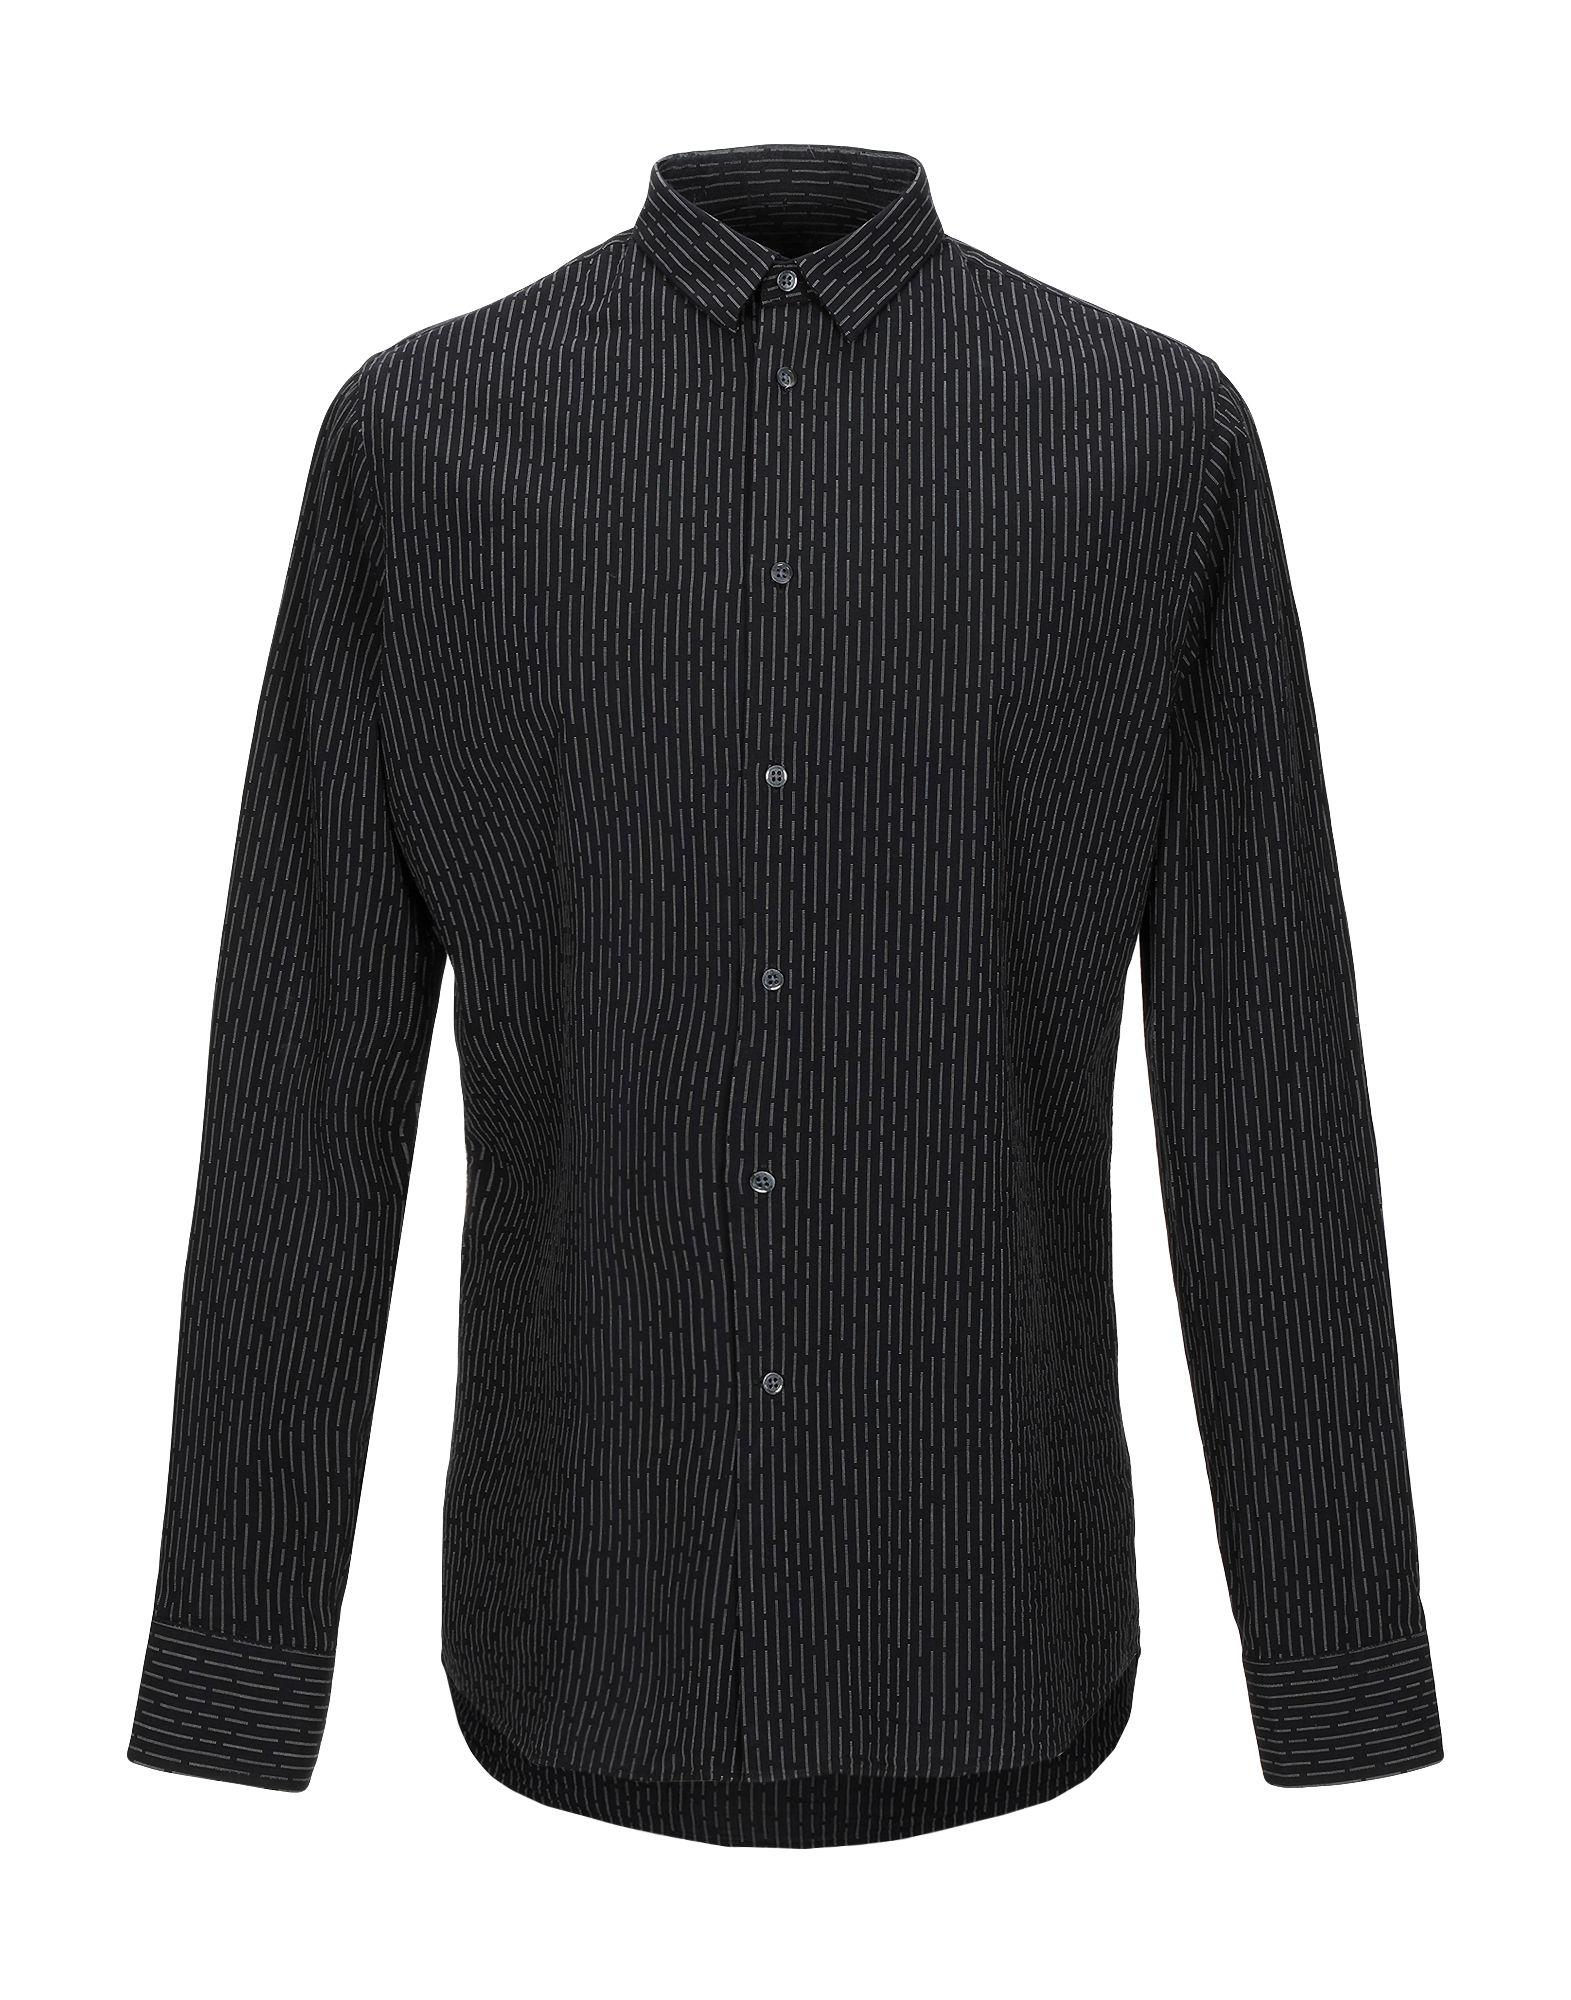 J.Lindeberg Cotton Shirt in Black for Men - Lyst